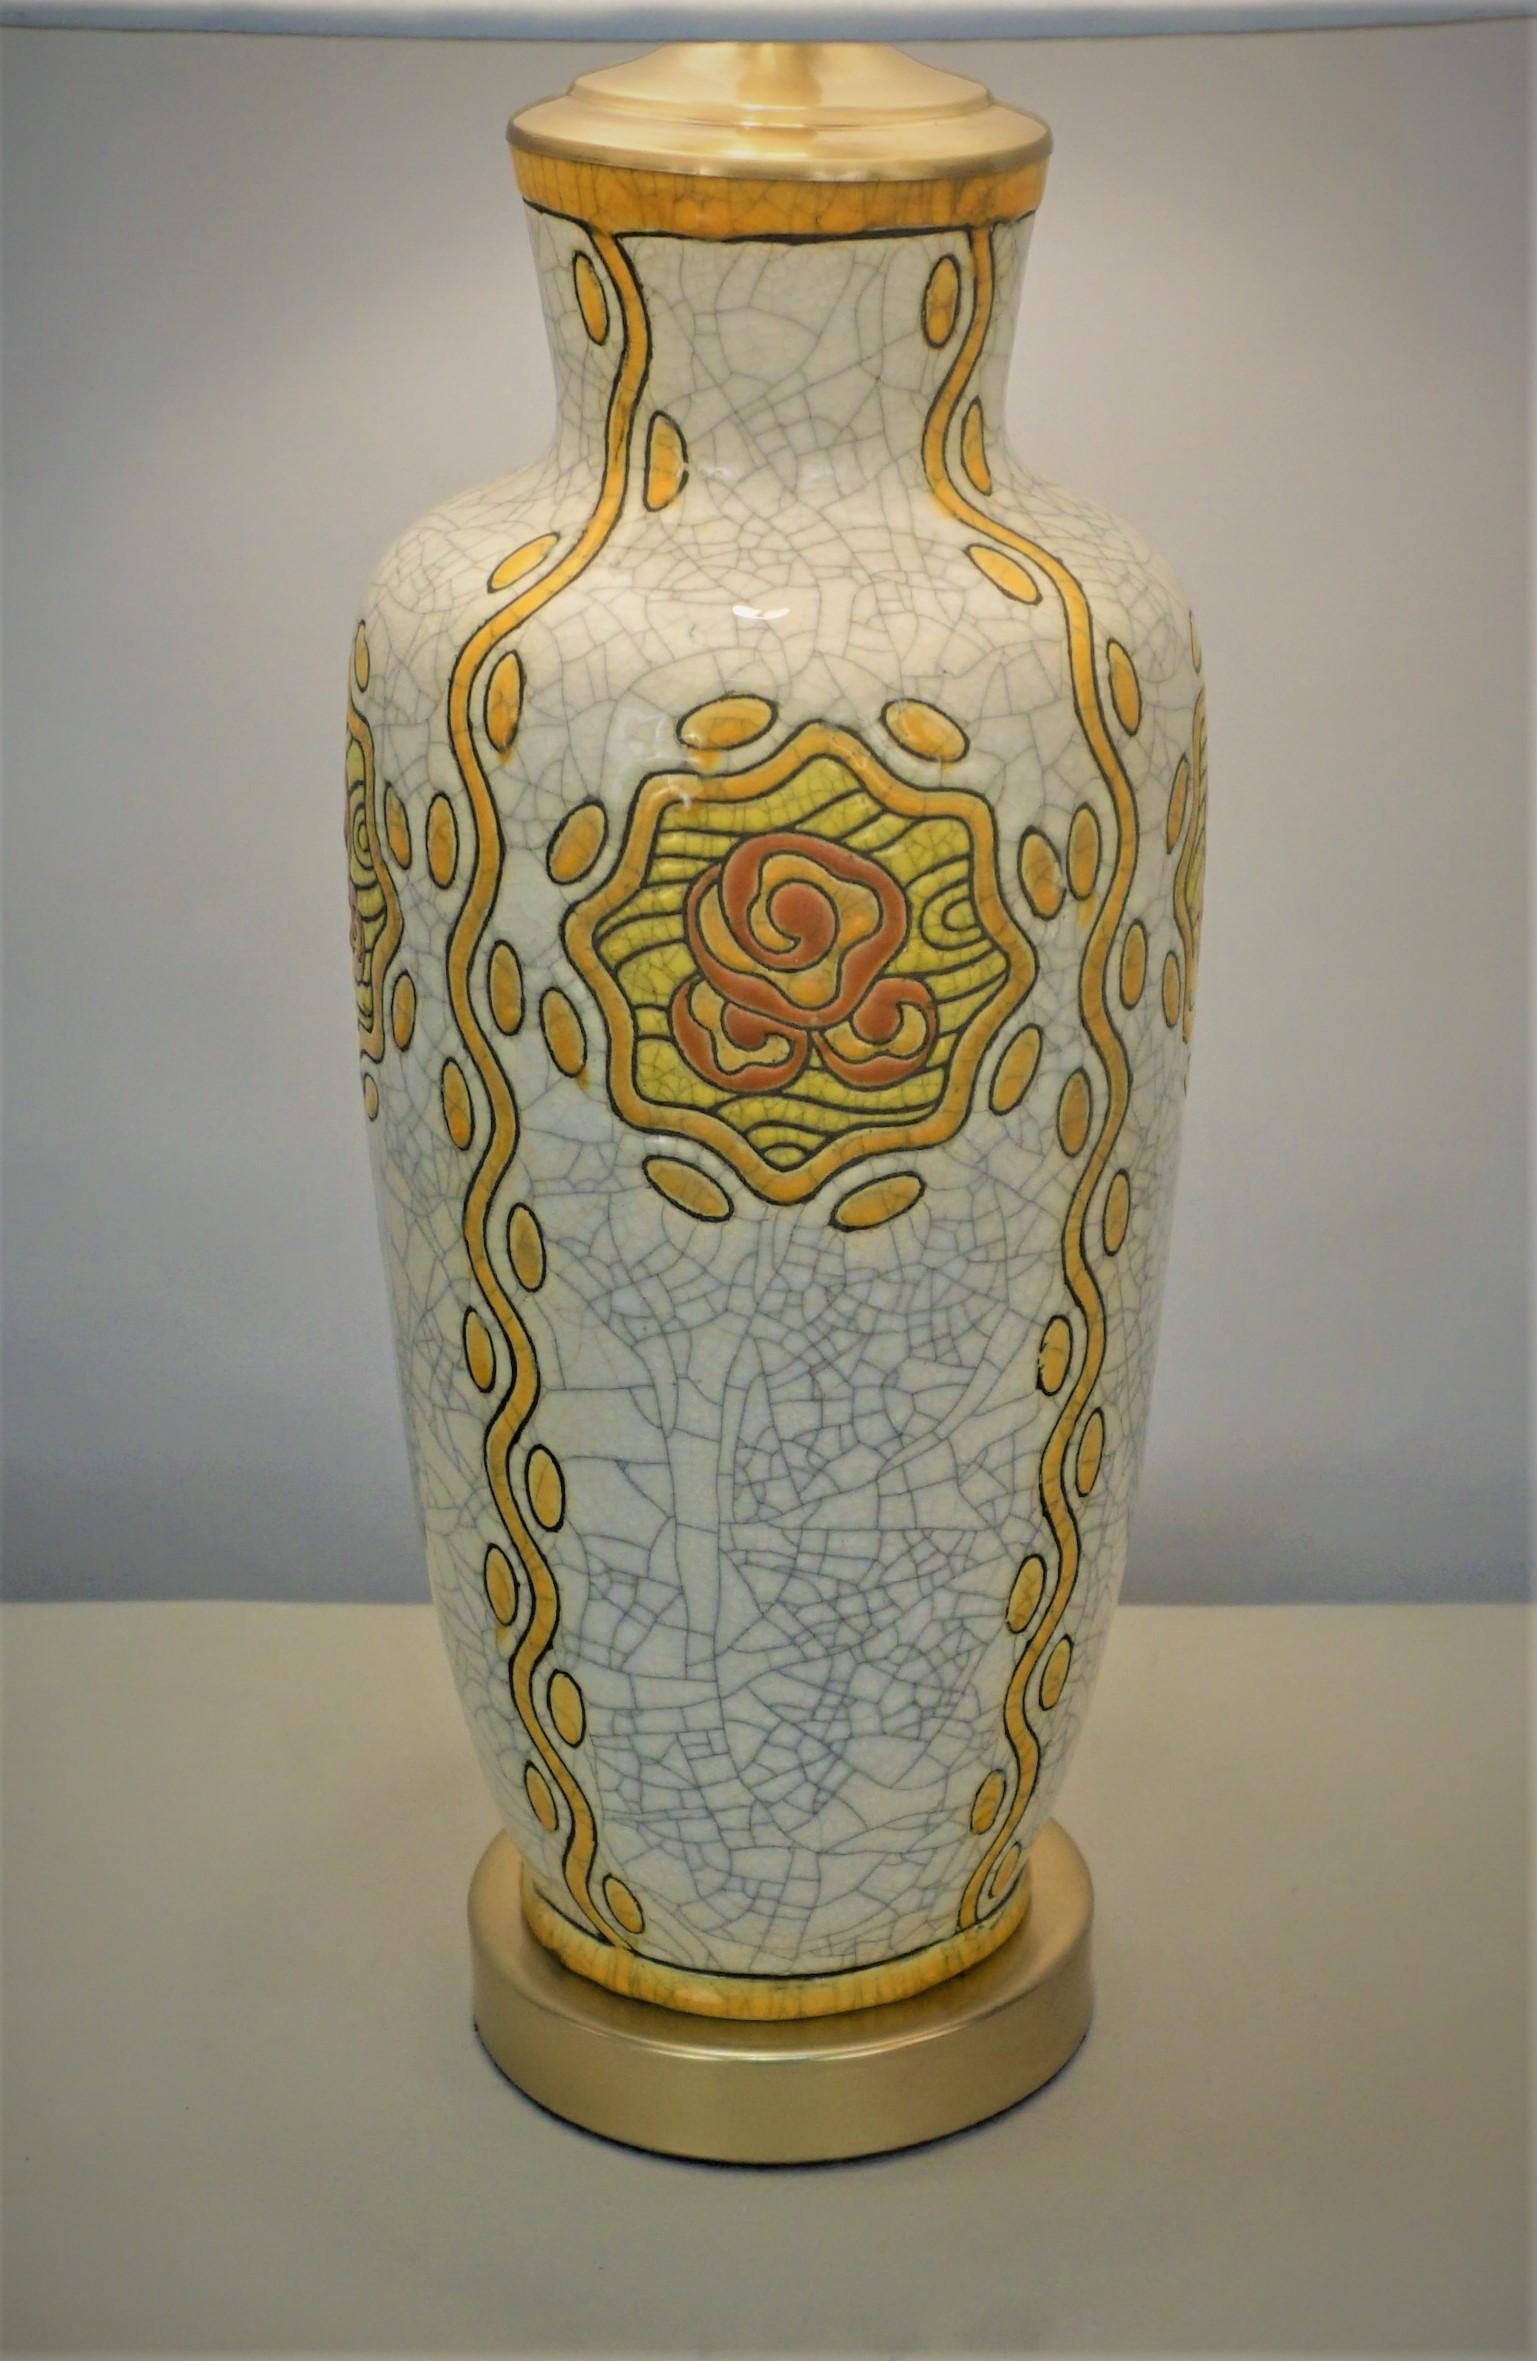 Poterie émaillée décorée de fleurs jaunes stylisées sur fond de craquelins blanc cassé qui a été transformée par un professionnel en lampe de table.